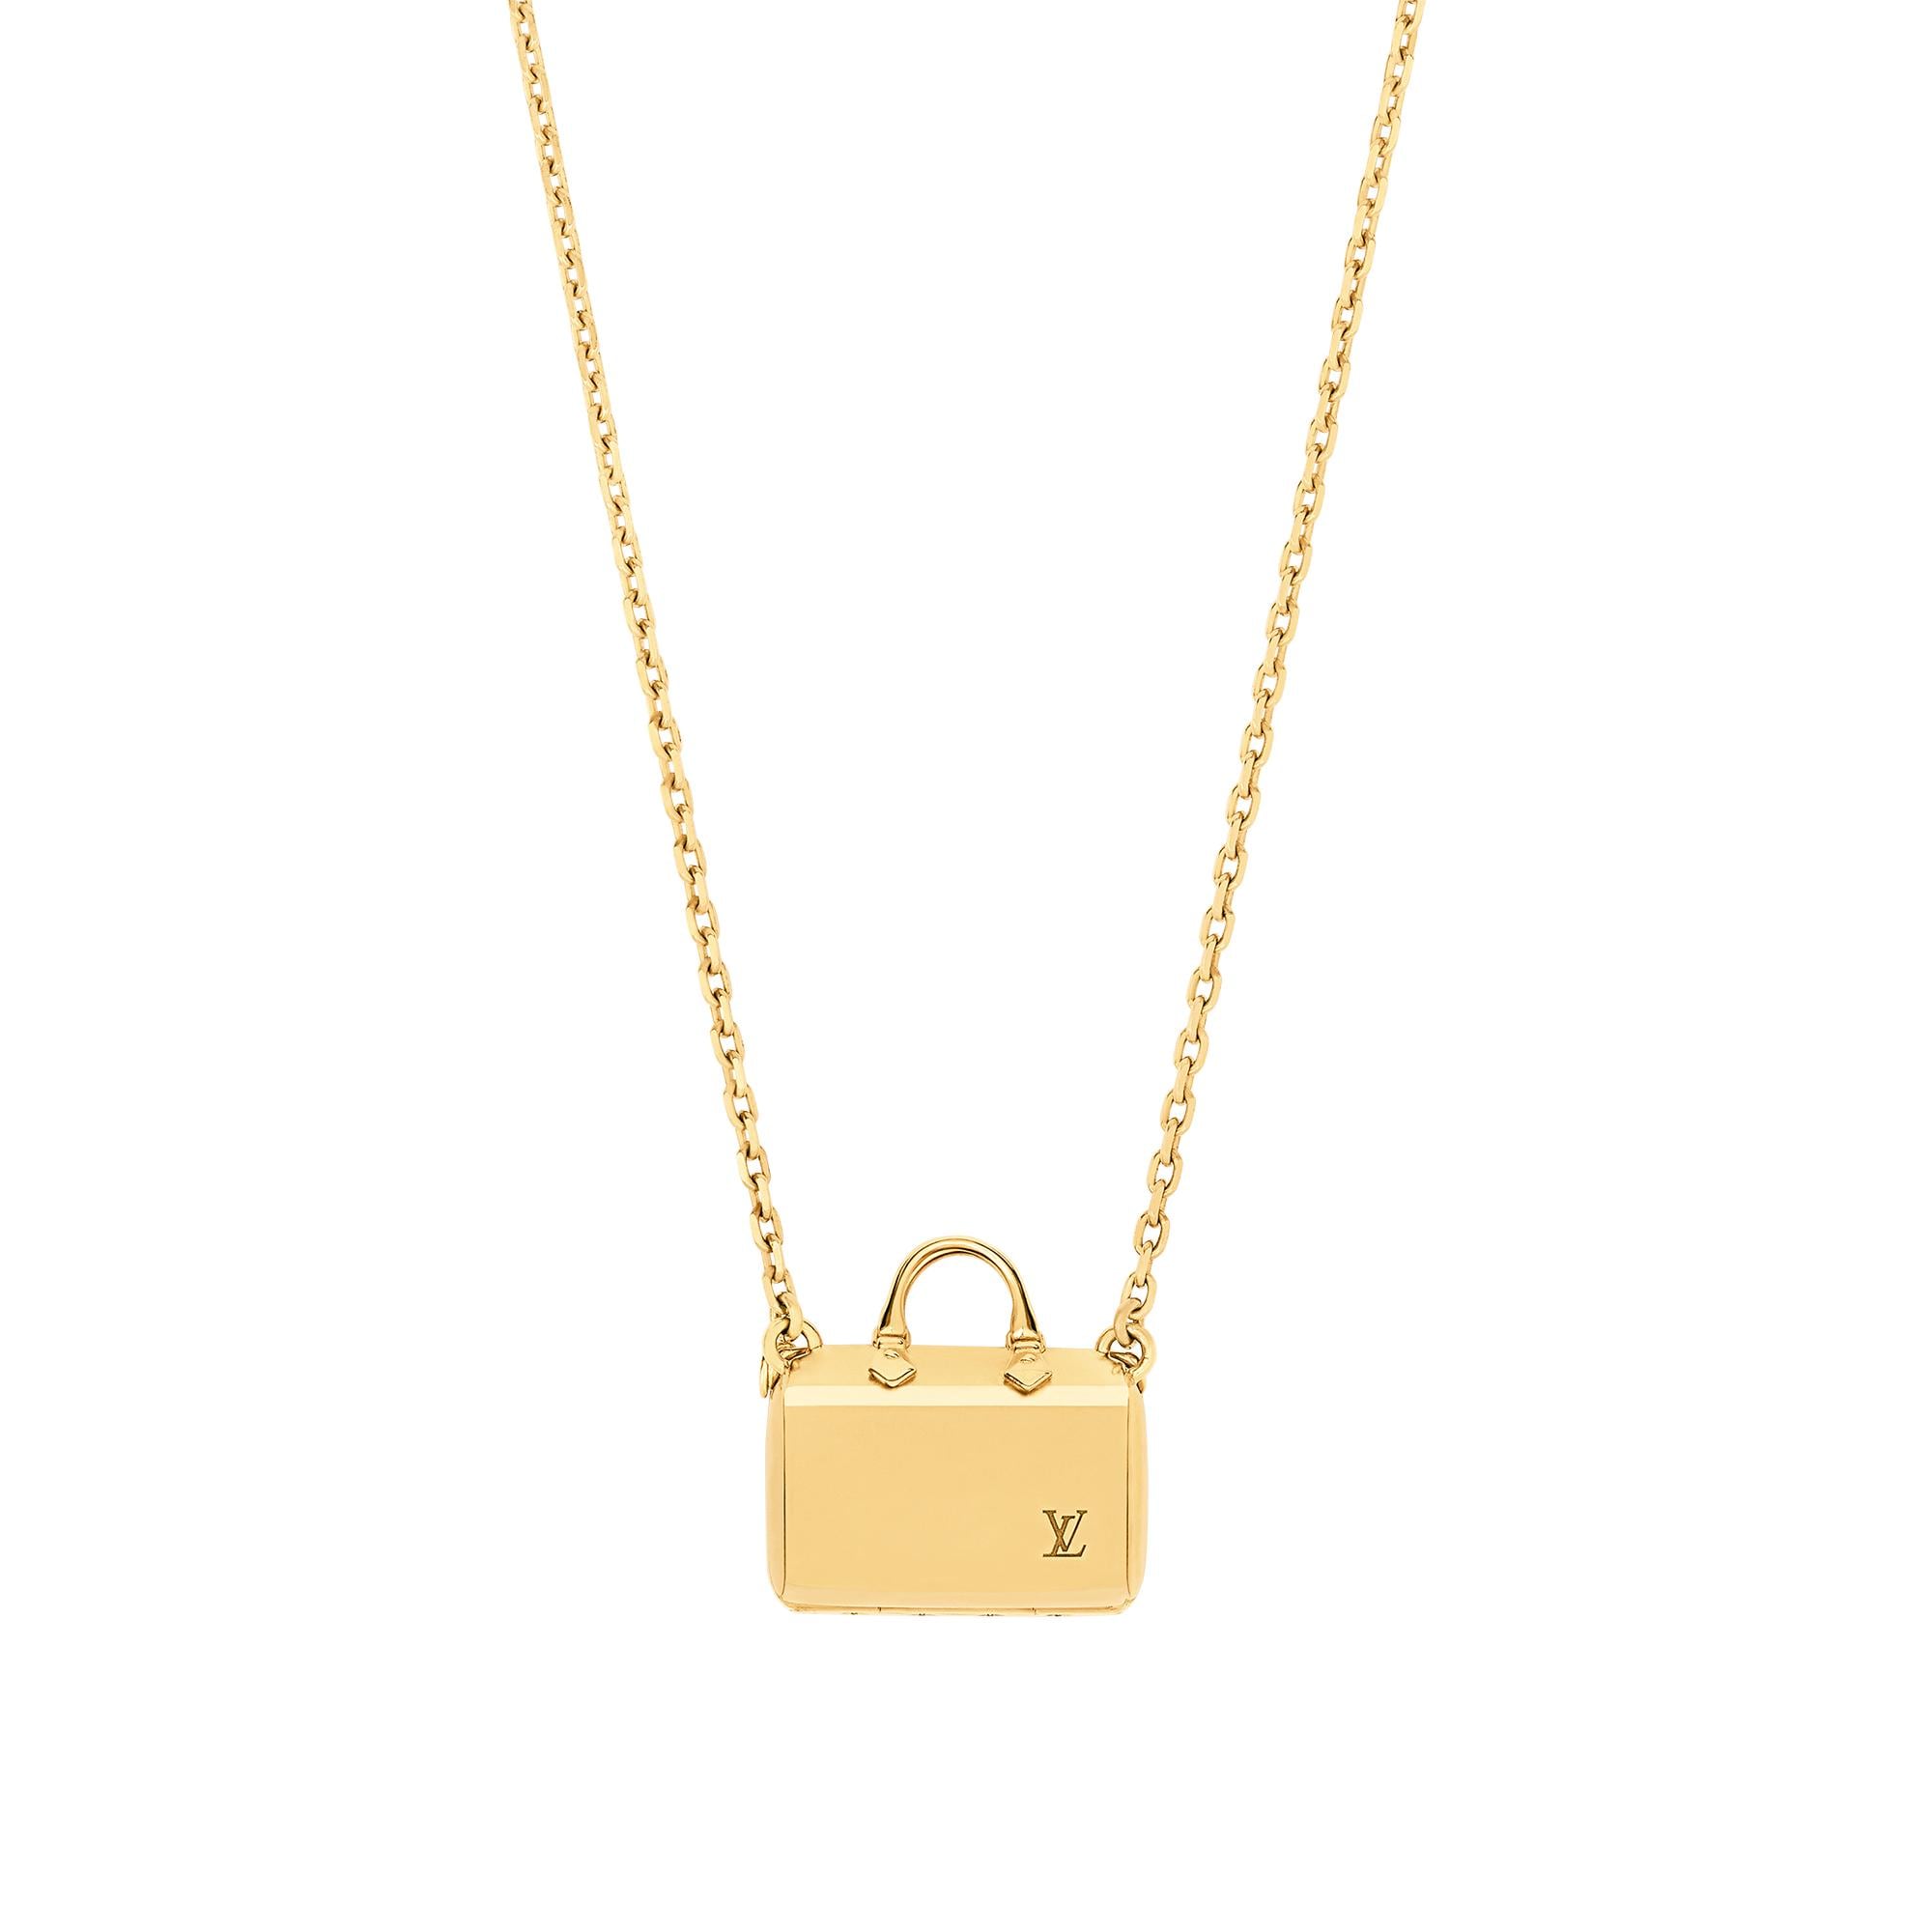 Louis Vuitton Speedy Nanogram Necklace in Gold – Accessories M00367